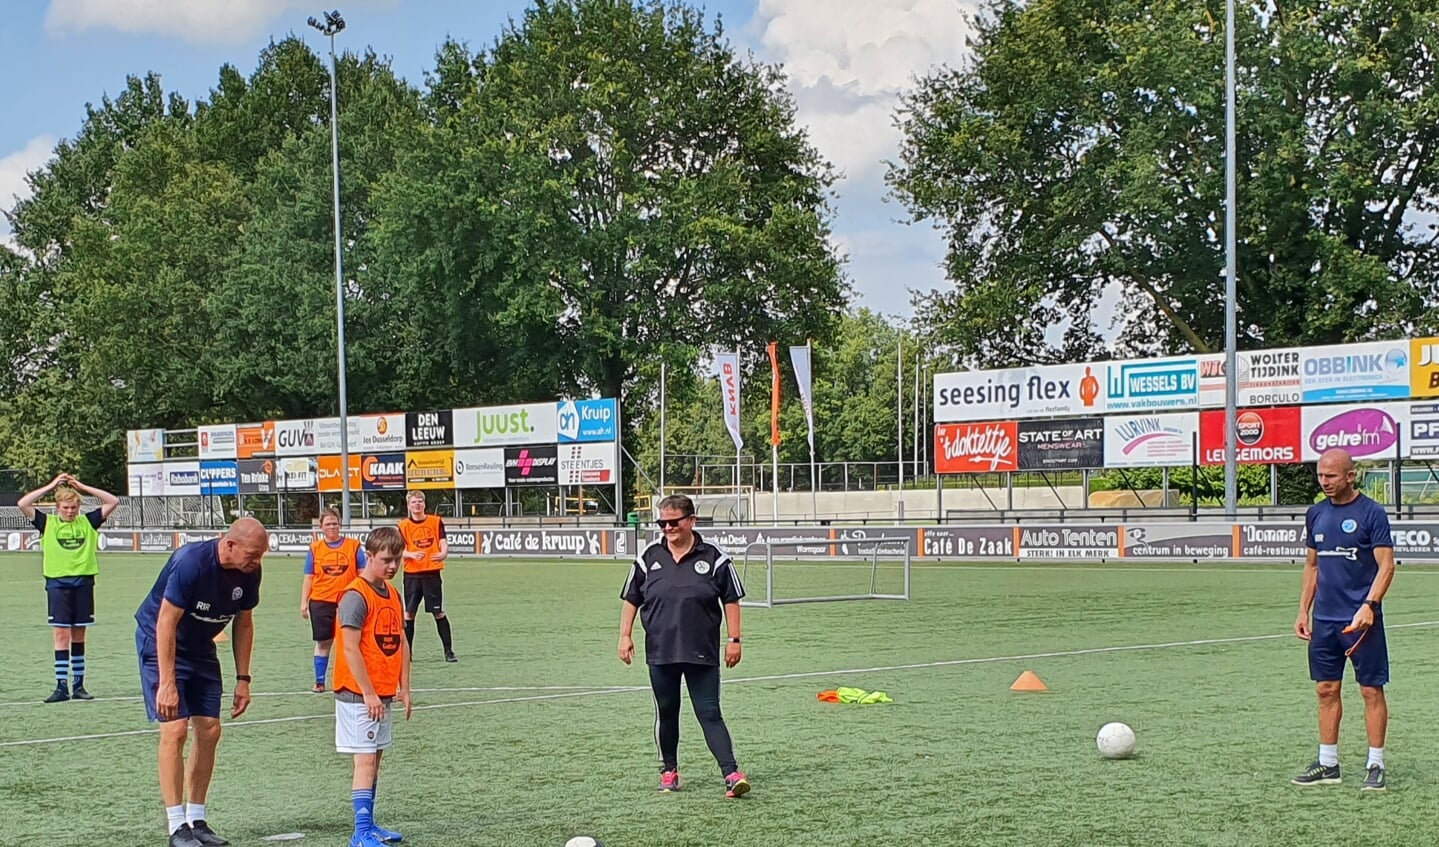 Graafschap-trainers Reinier Robbemond en Richard Roelofsen, en leidster Pien Reinders instrueren Dani Hoffman van Grol-Longa voor het nemen van een penalty.